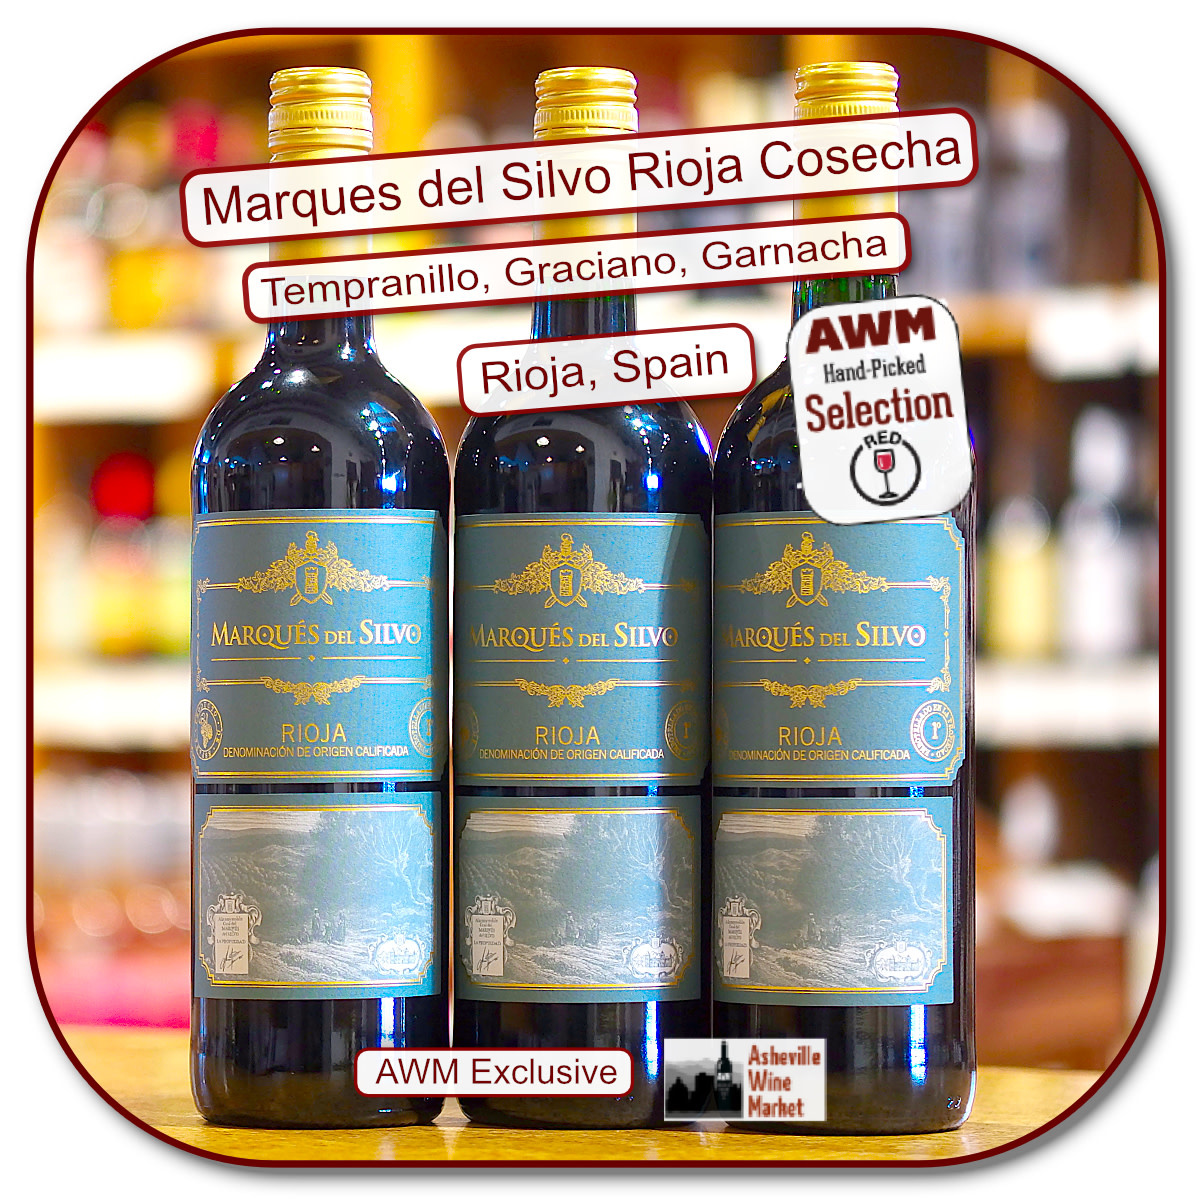 Silvo - The Cosecha Marques Asheville 2019 del Tinto Rioja Market Wine